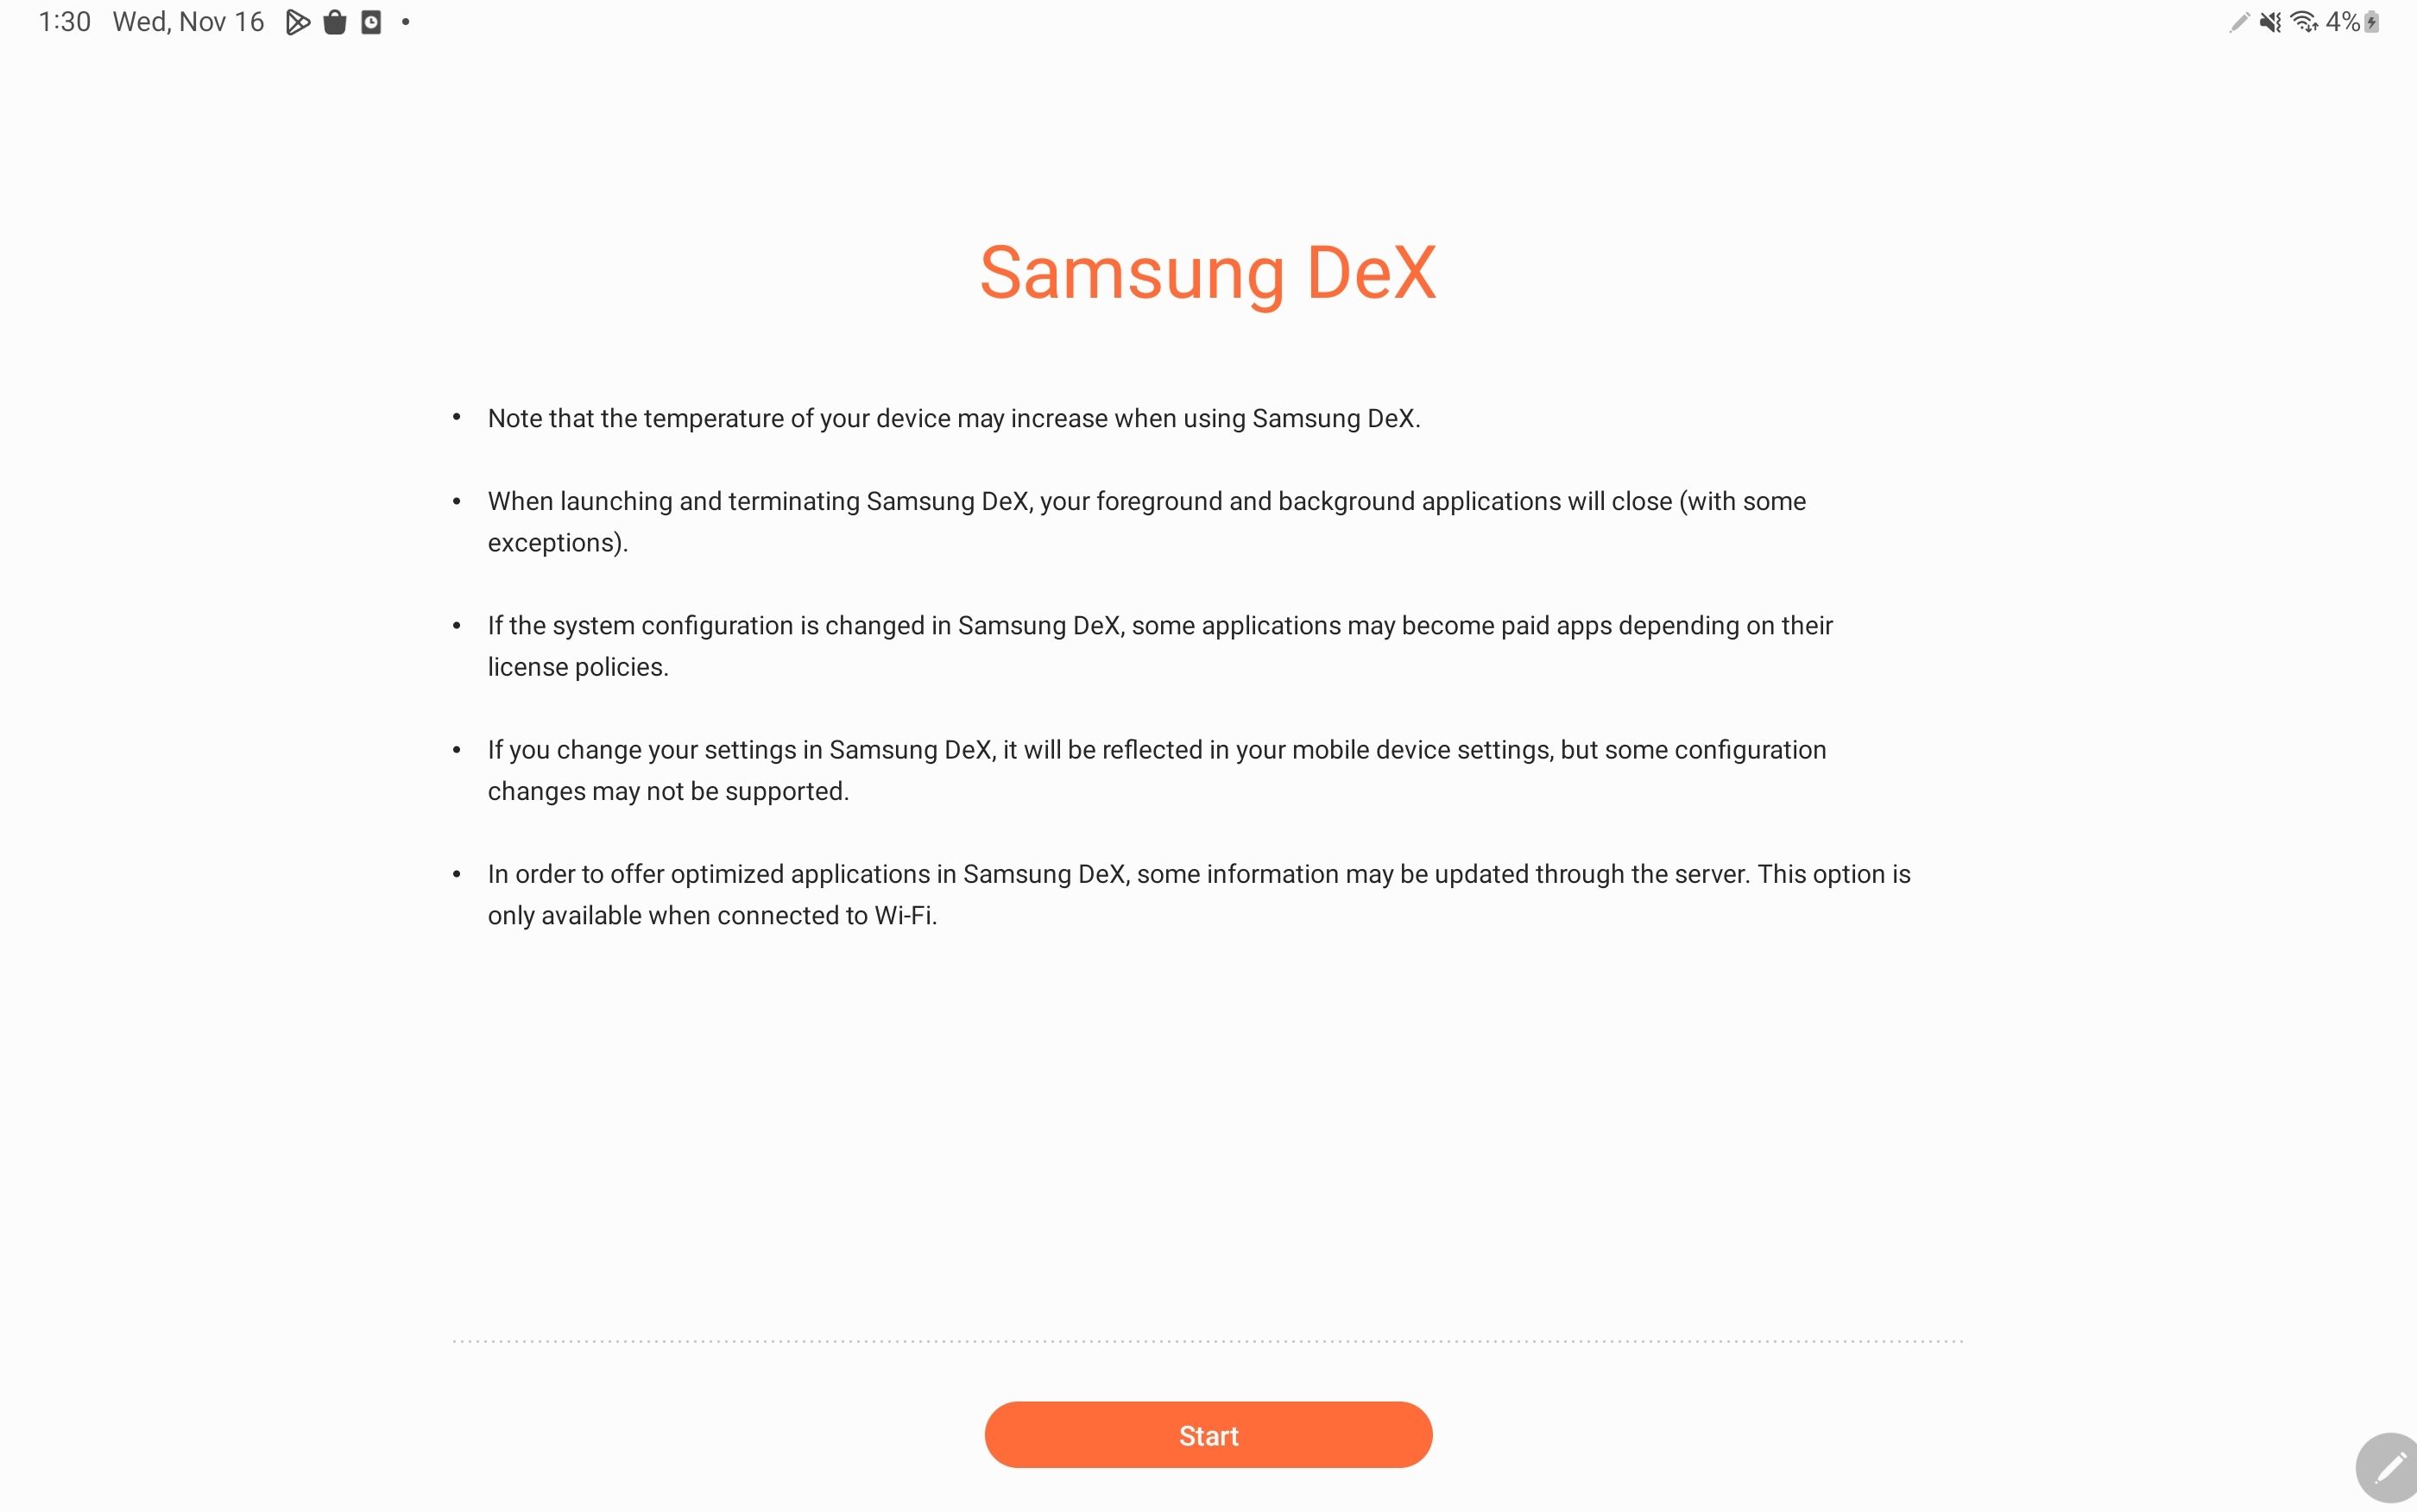 Clique em Iniciar depois de ler o aviso de isenção de responsabilidade do Samsung DeX em seu tablet.